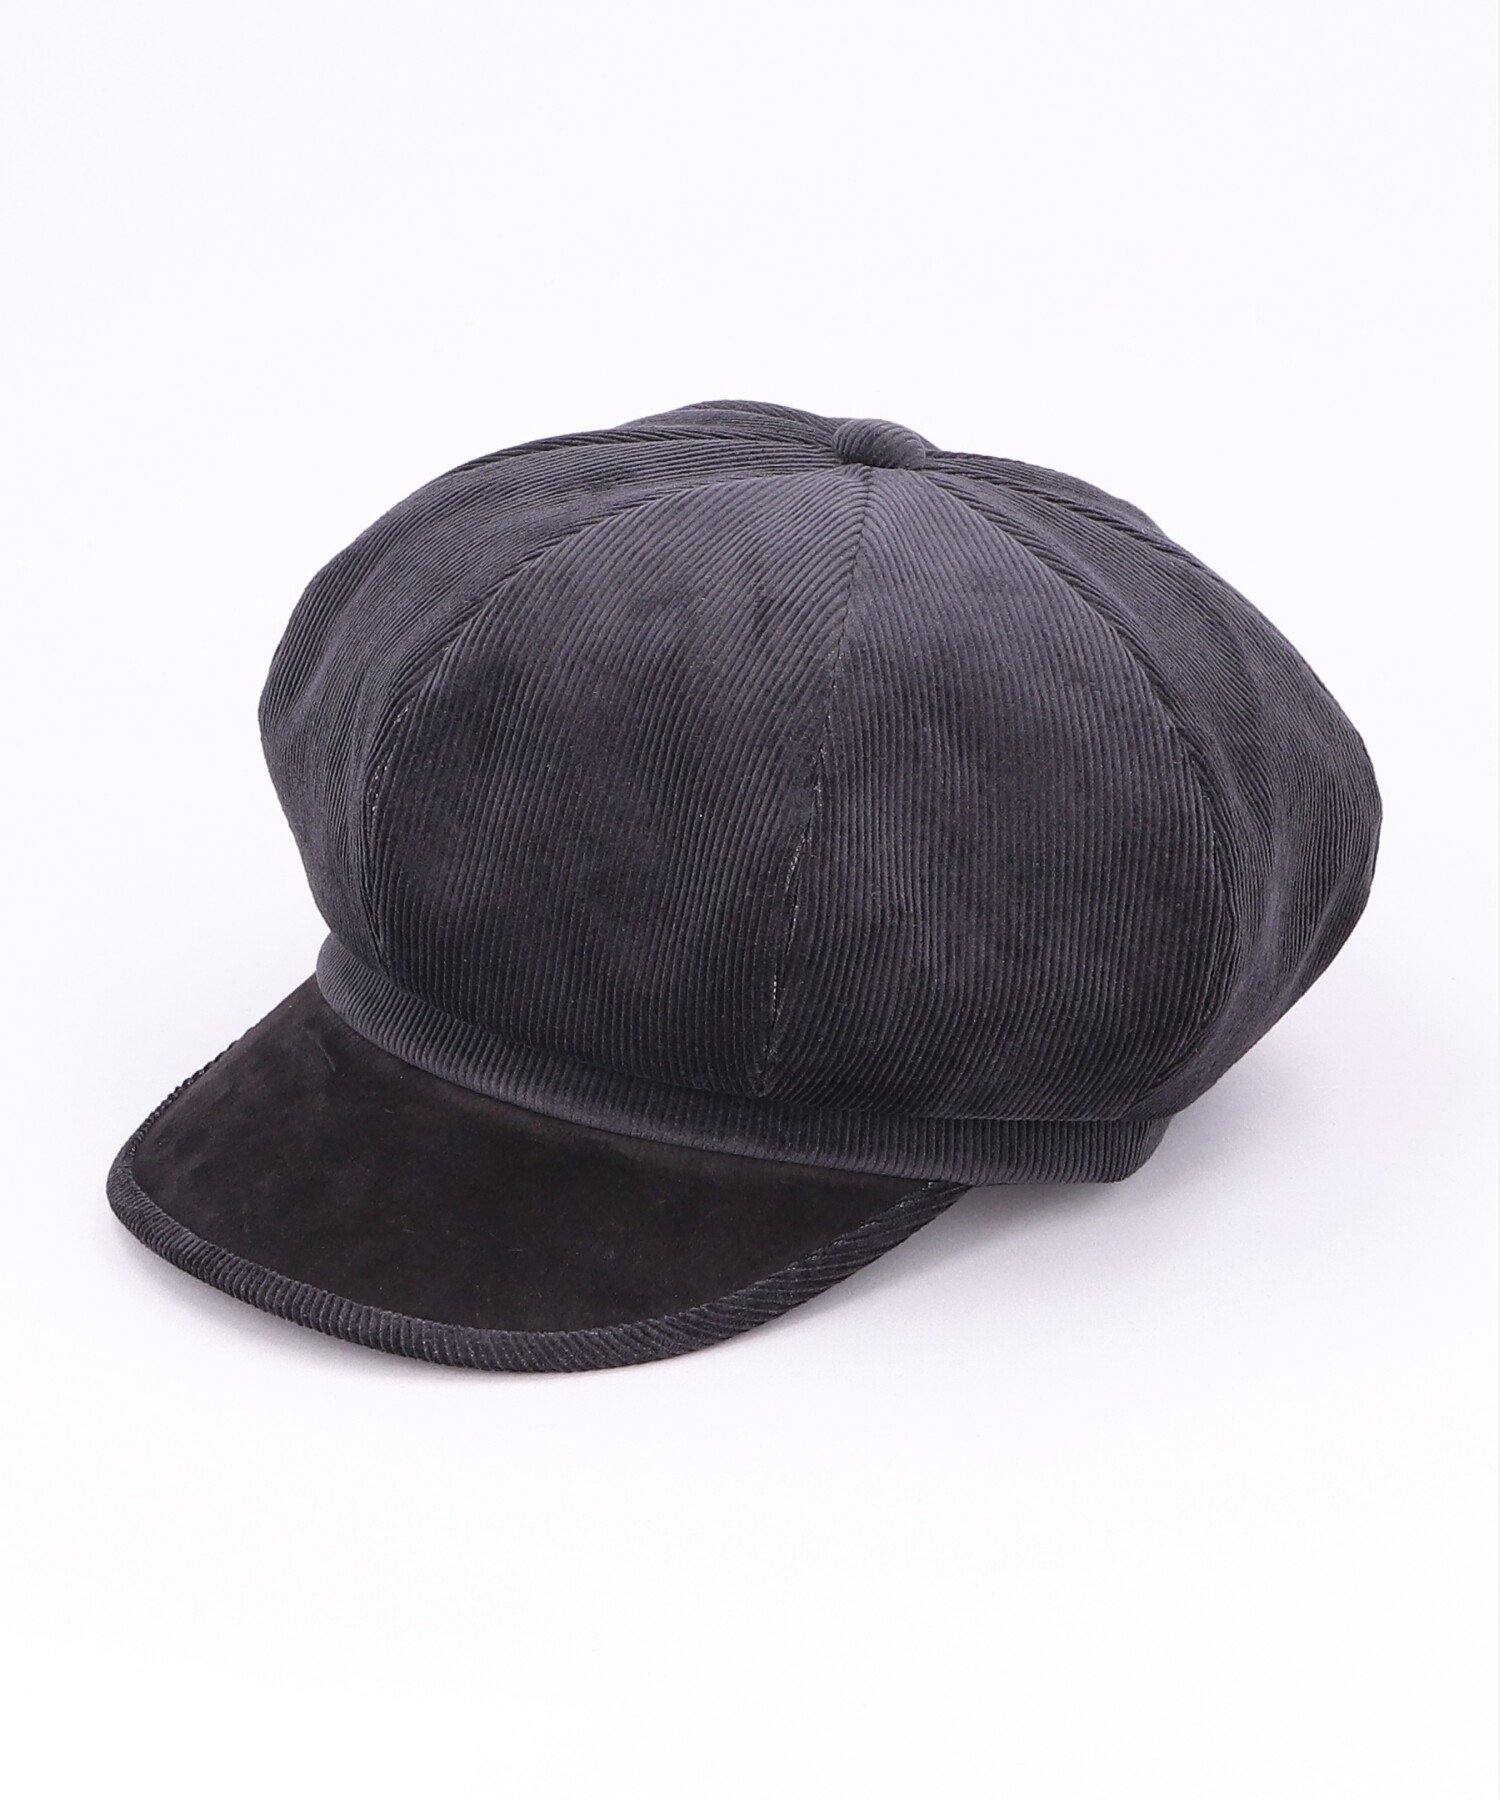 カシラ 帽子 メンズ CA4LA CORDELL C14 カシラ 帽子 キャスケット ブラック ベージュ【送料無料】